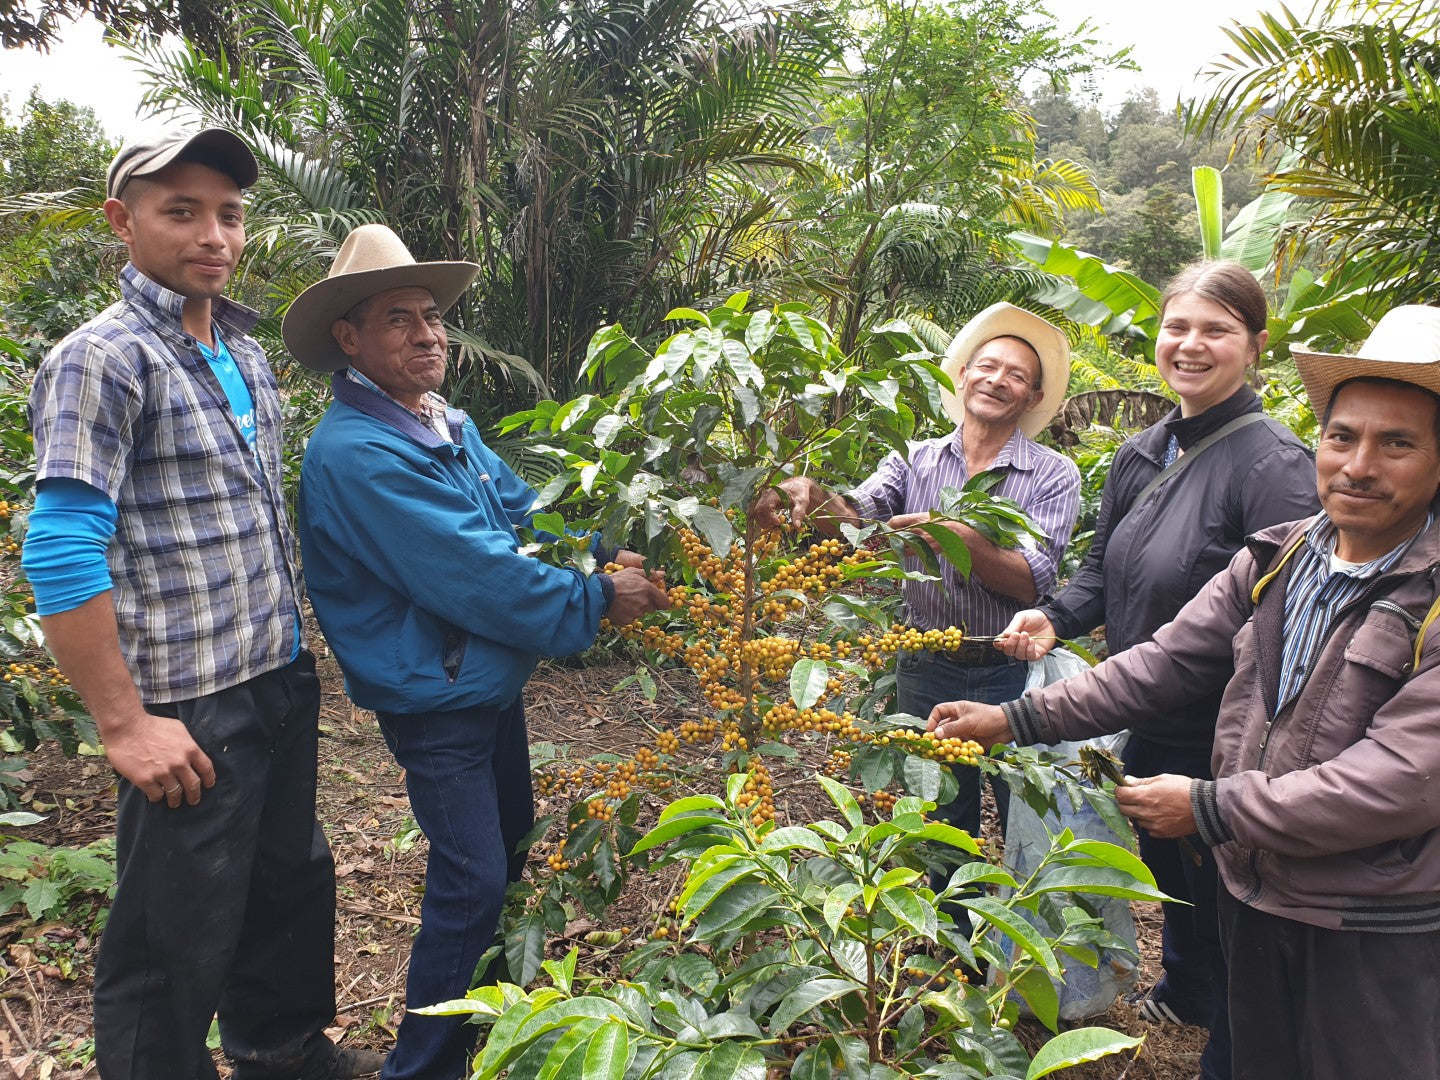 Honduras Aprolma | Moderner Filterkaffee